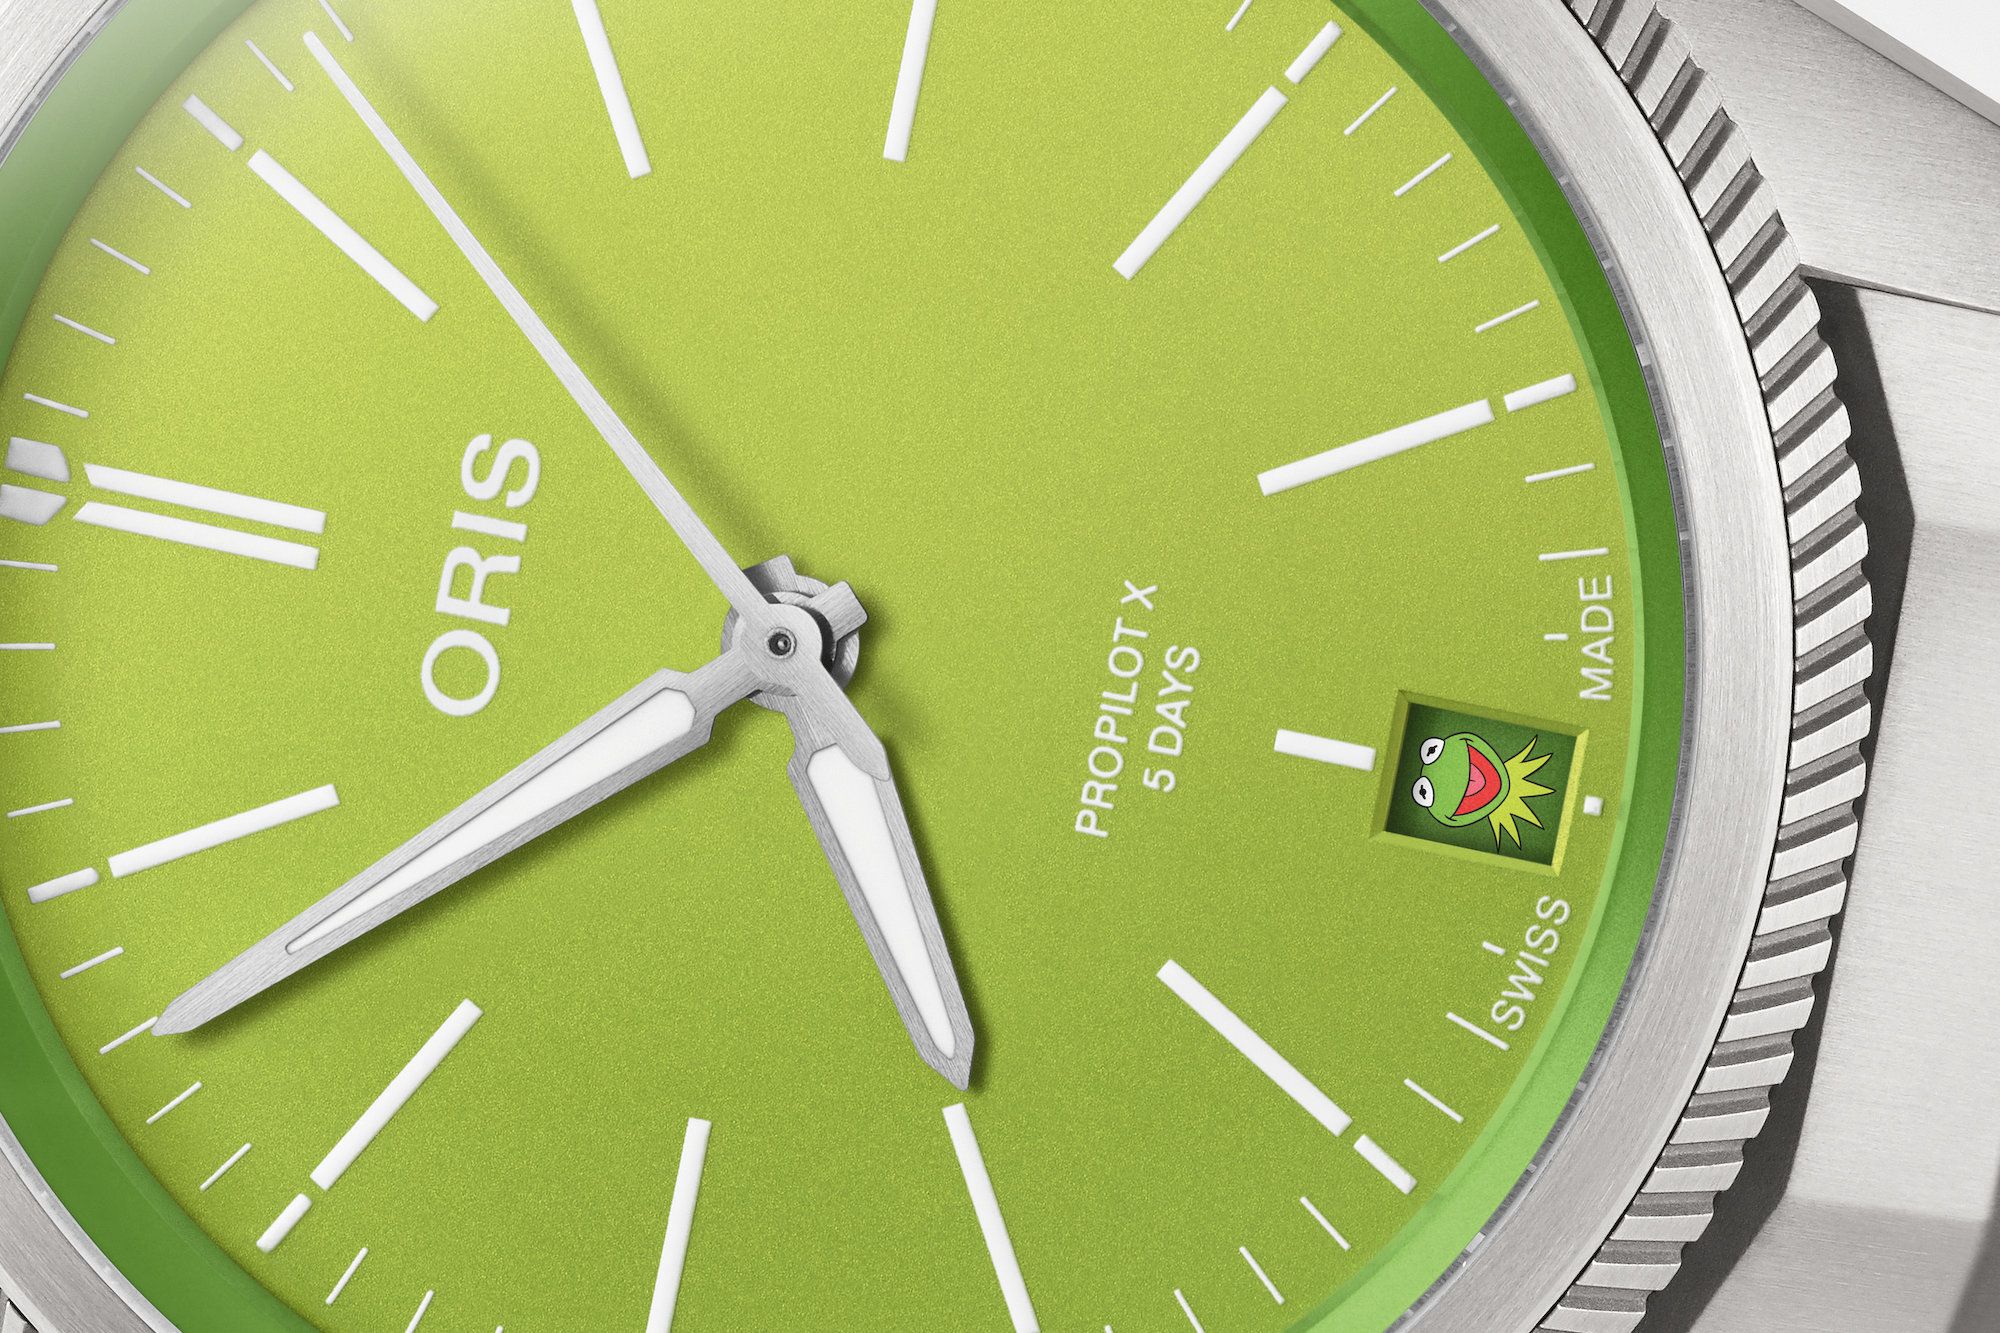 「オリスの時計は高級である」の真意をオリス最高経営責任者に 